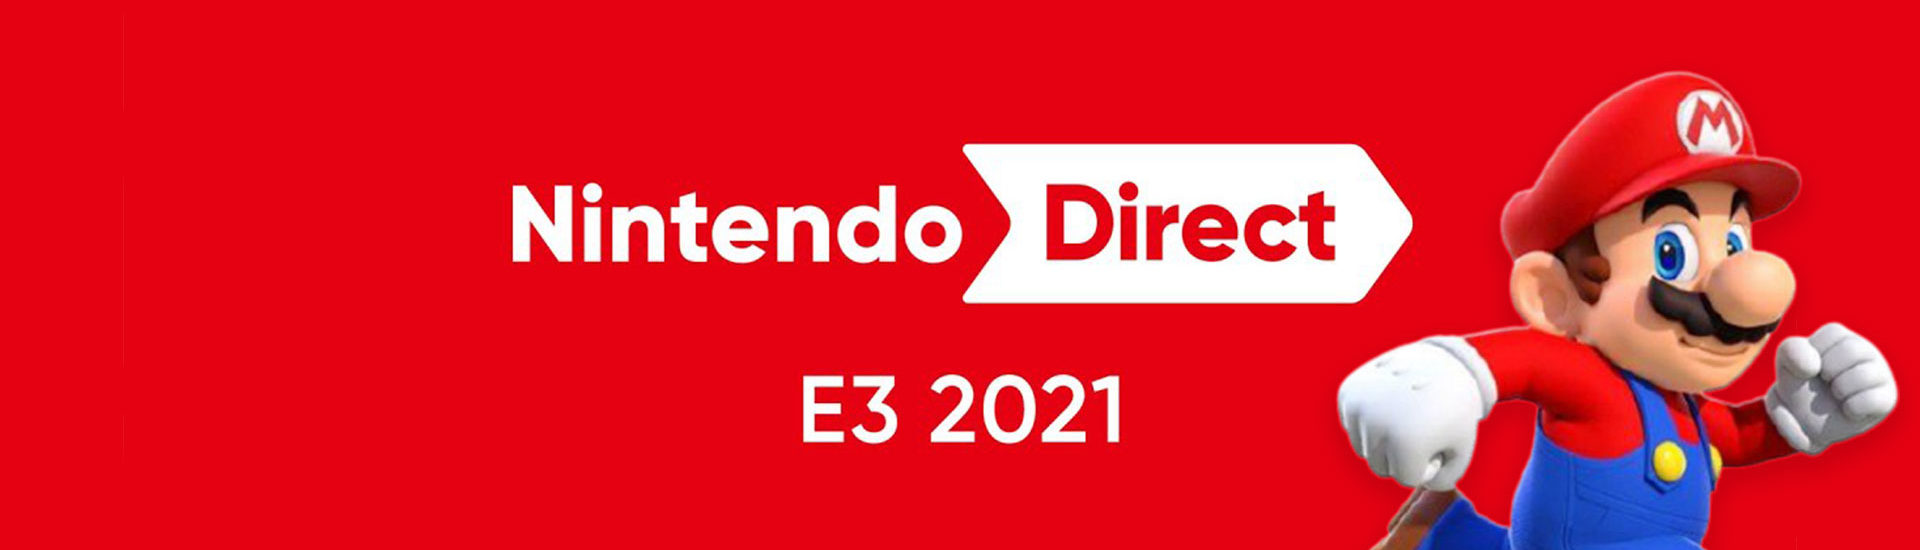 E3: Nintendo Direct — alle Ankündigungen und Spiele im Überblick